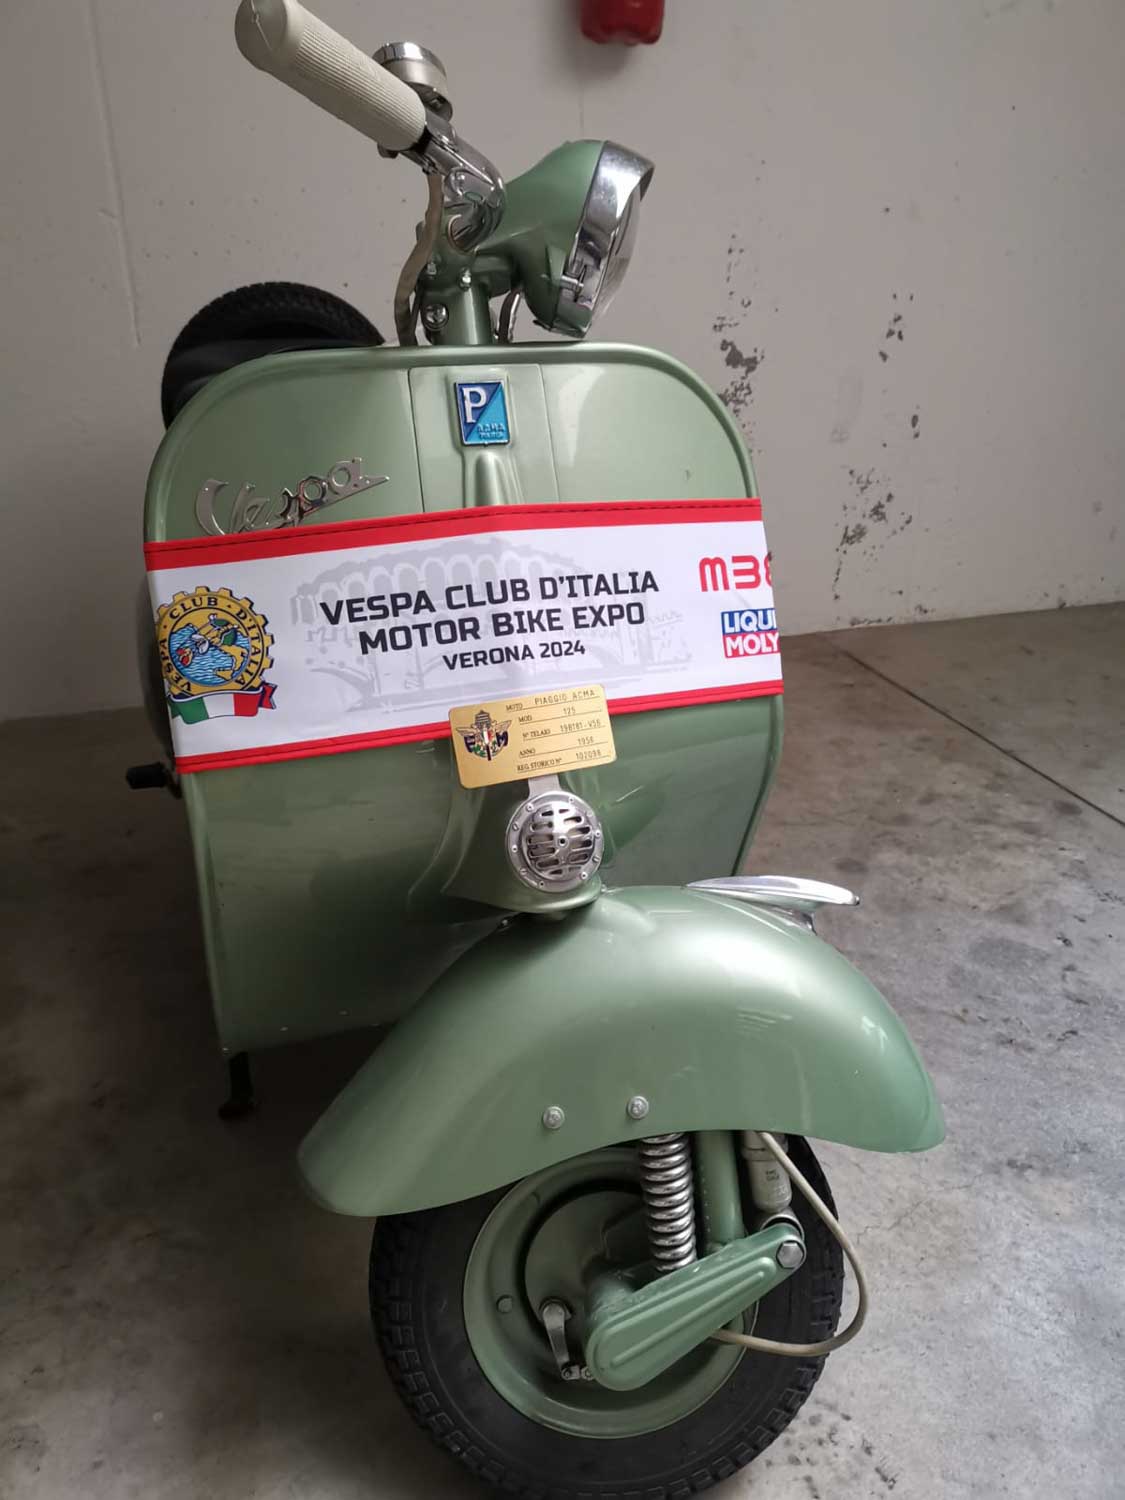 Il Vespa Club d'Italia al Motor bike expo